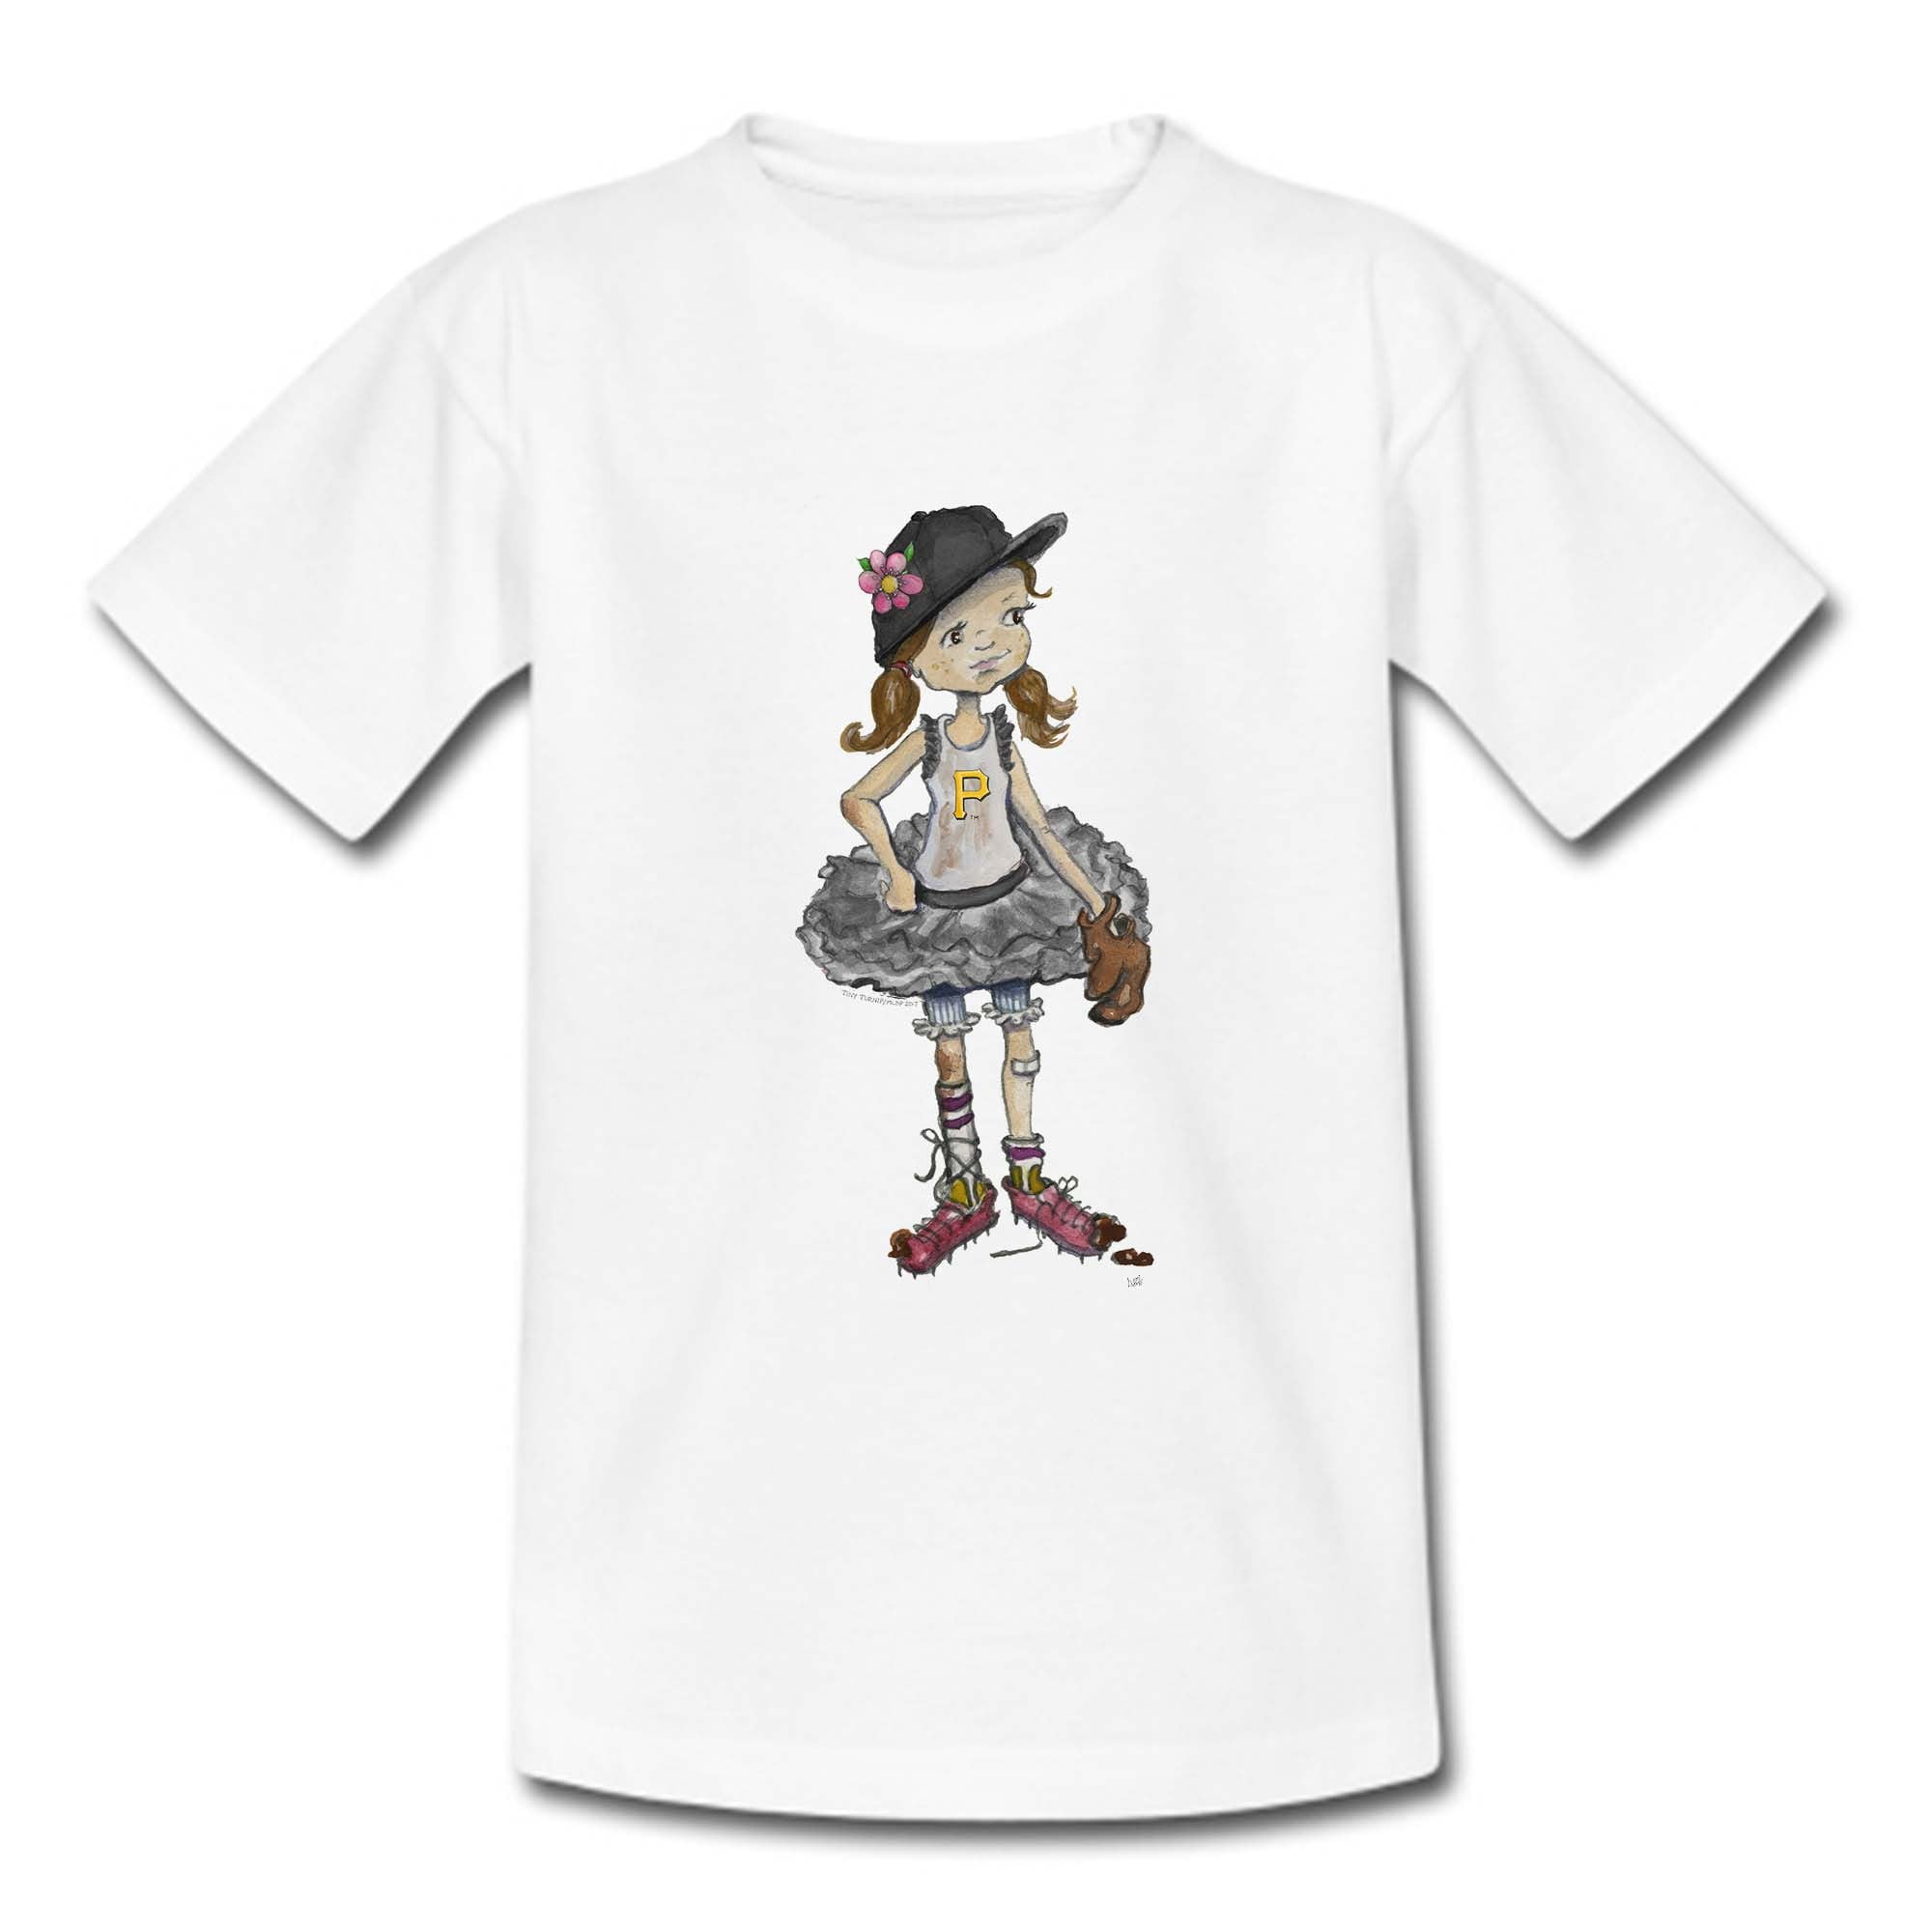 toddler pittsburgh pirates t shirt